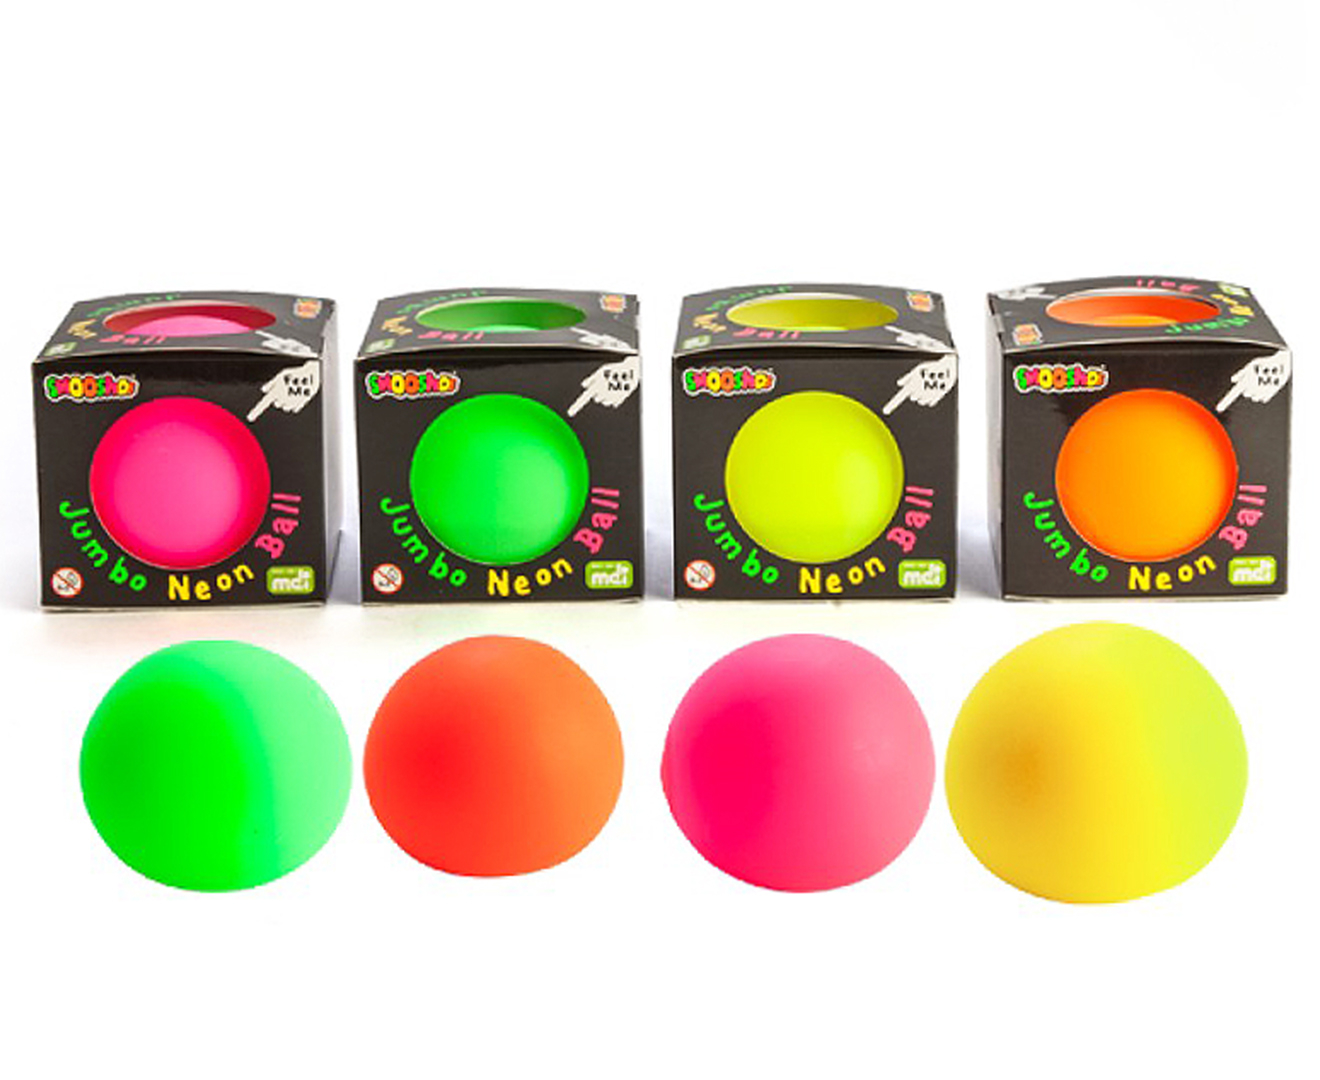 Smooshos Jumbo Neon Ball - Randomly Selected | Catch.co.nz